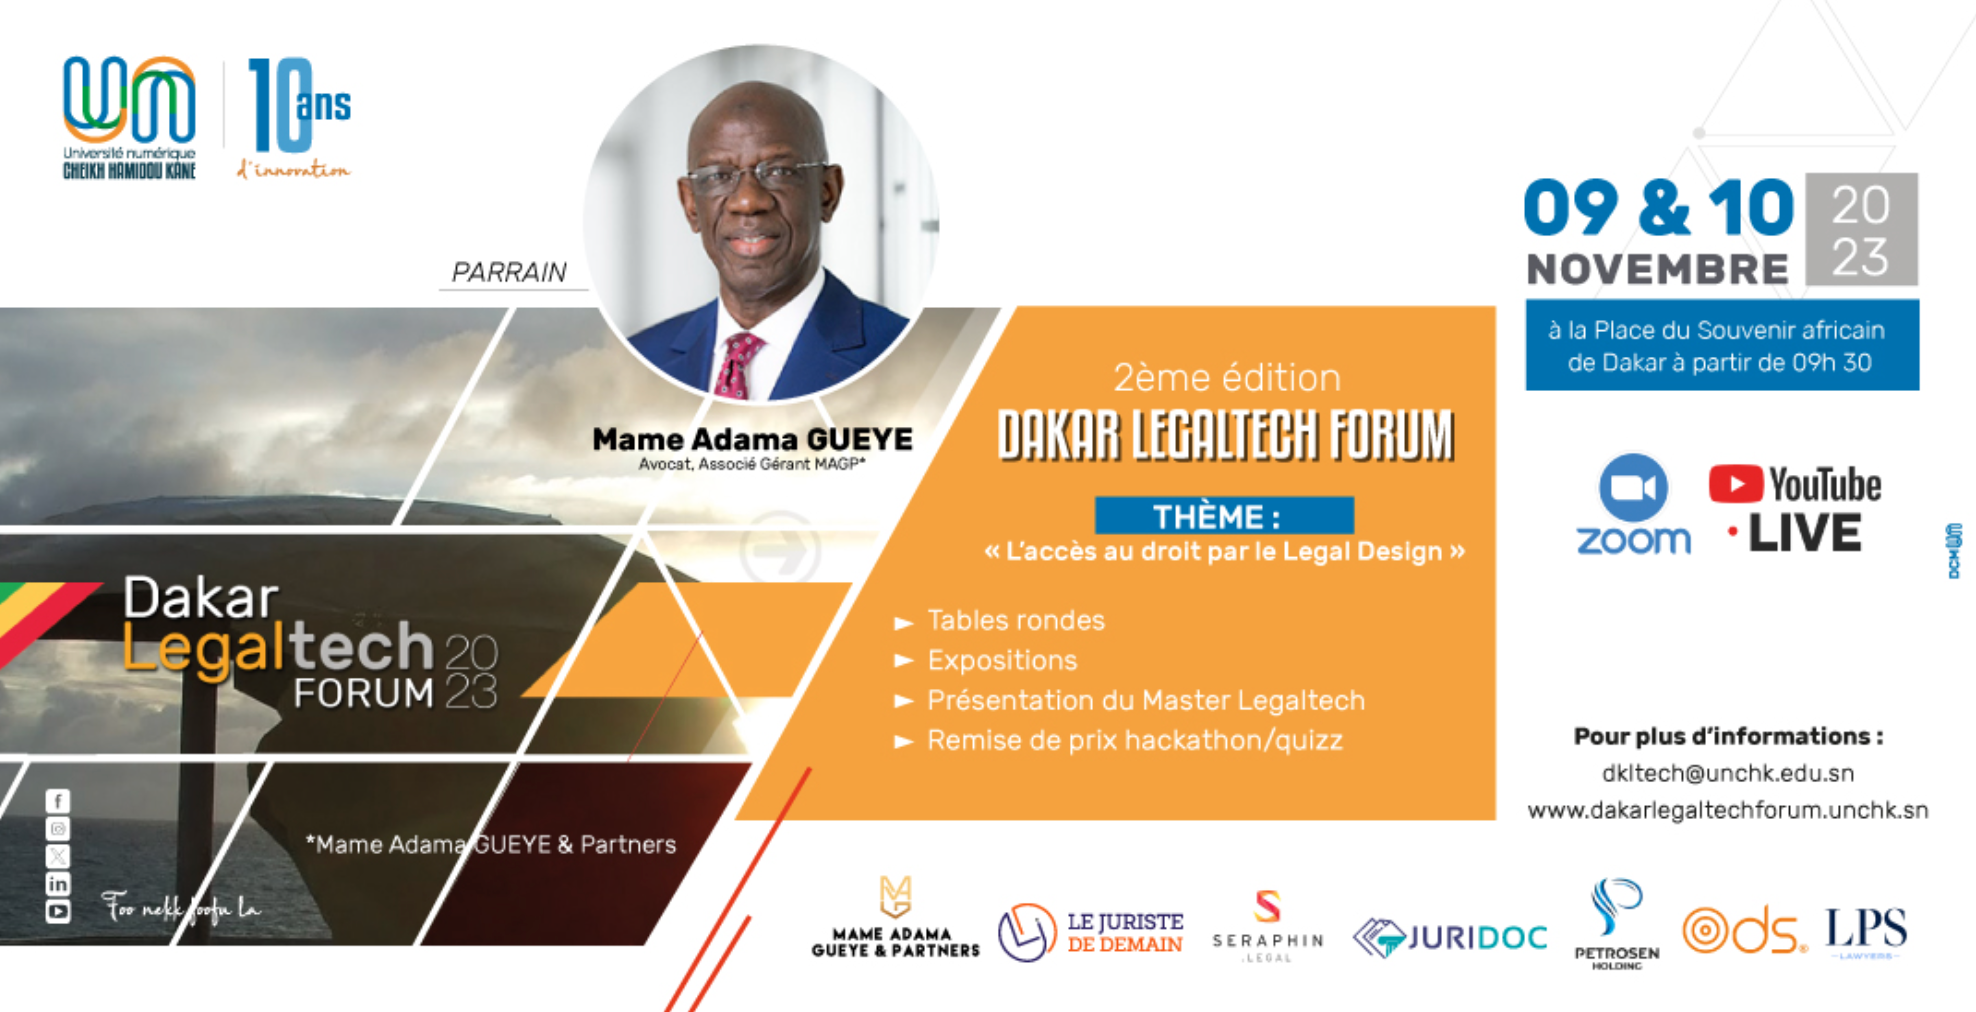 L’Université Numérique Cheikh Hamidou KANE organise la 2e édition du Dakar Legaltech Forum